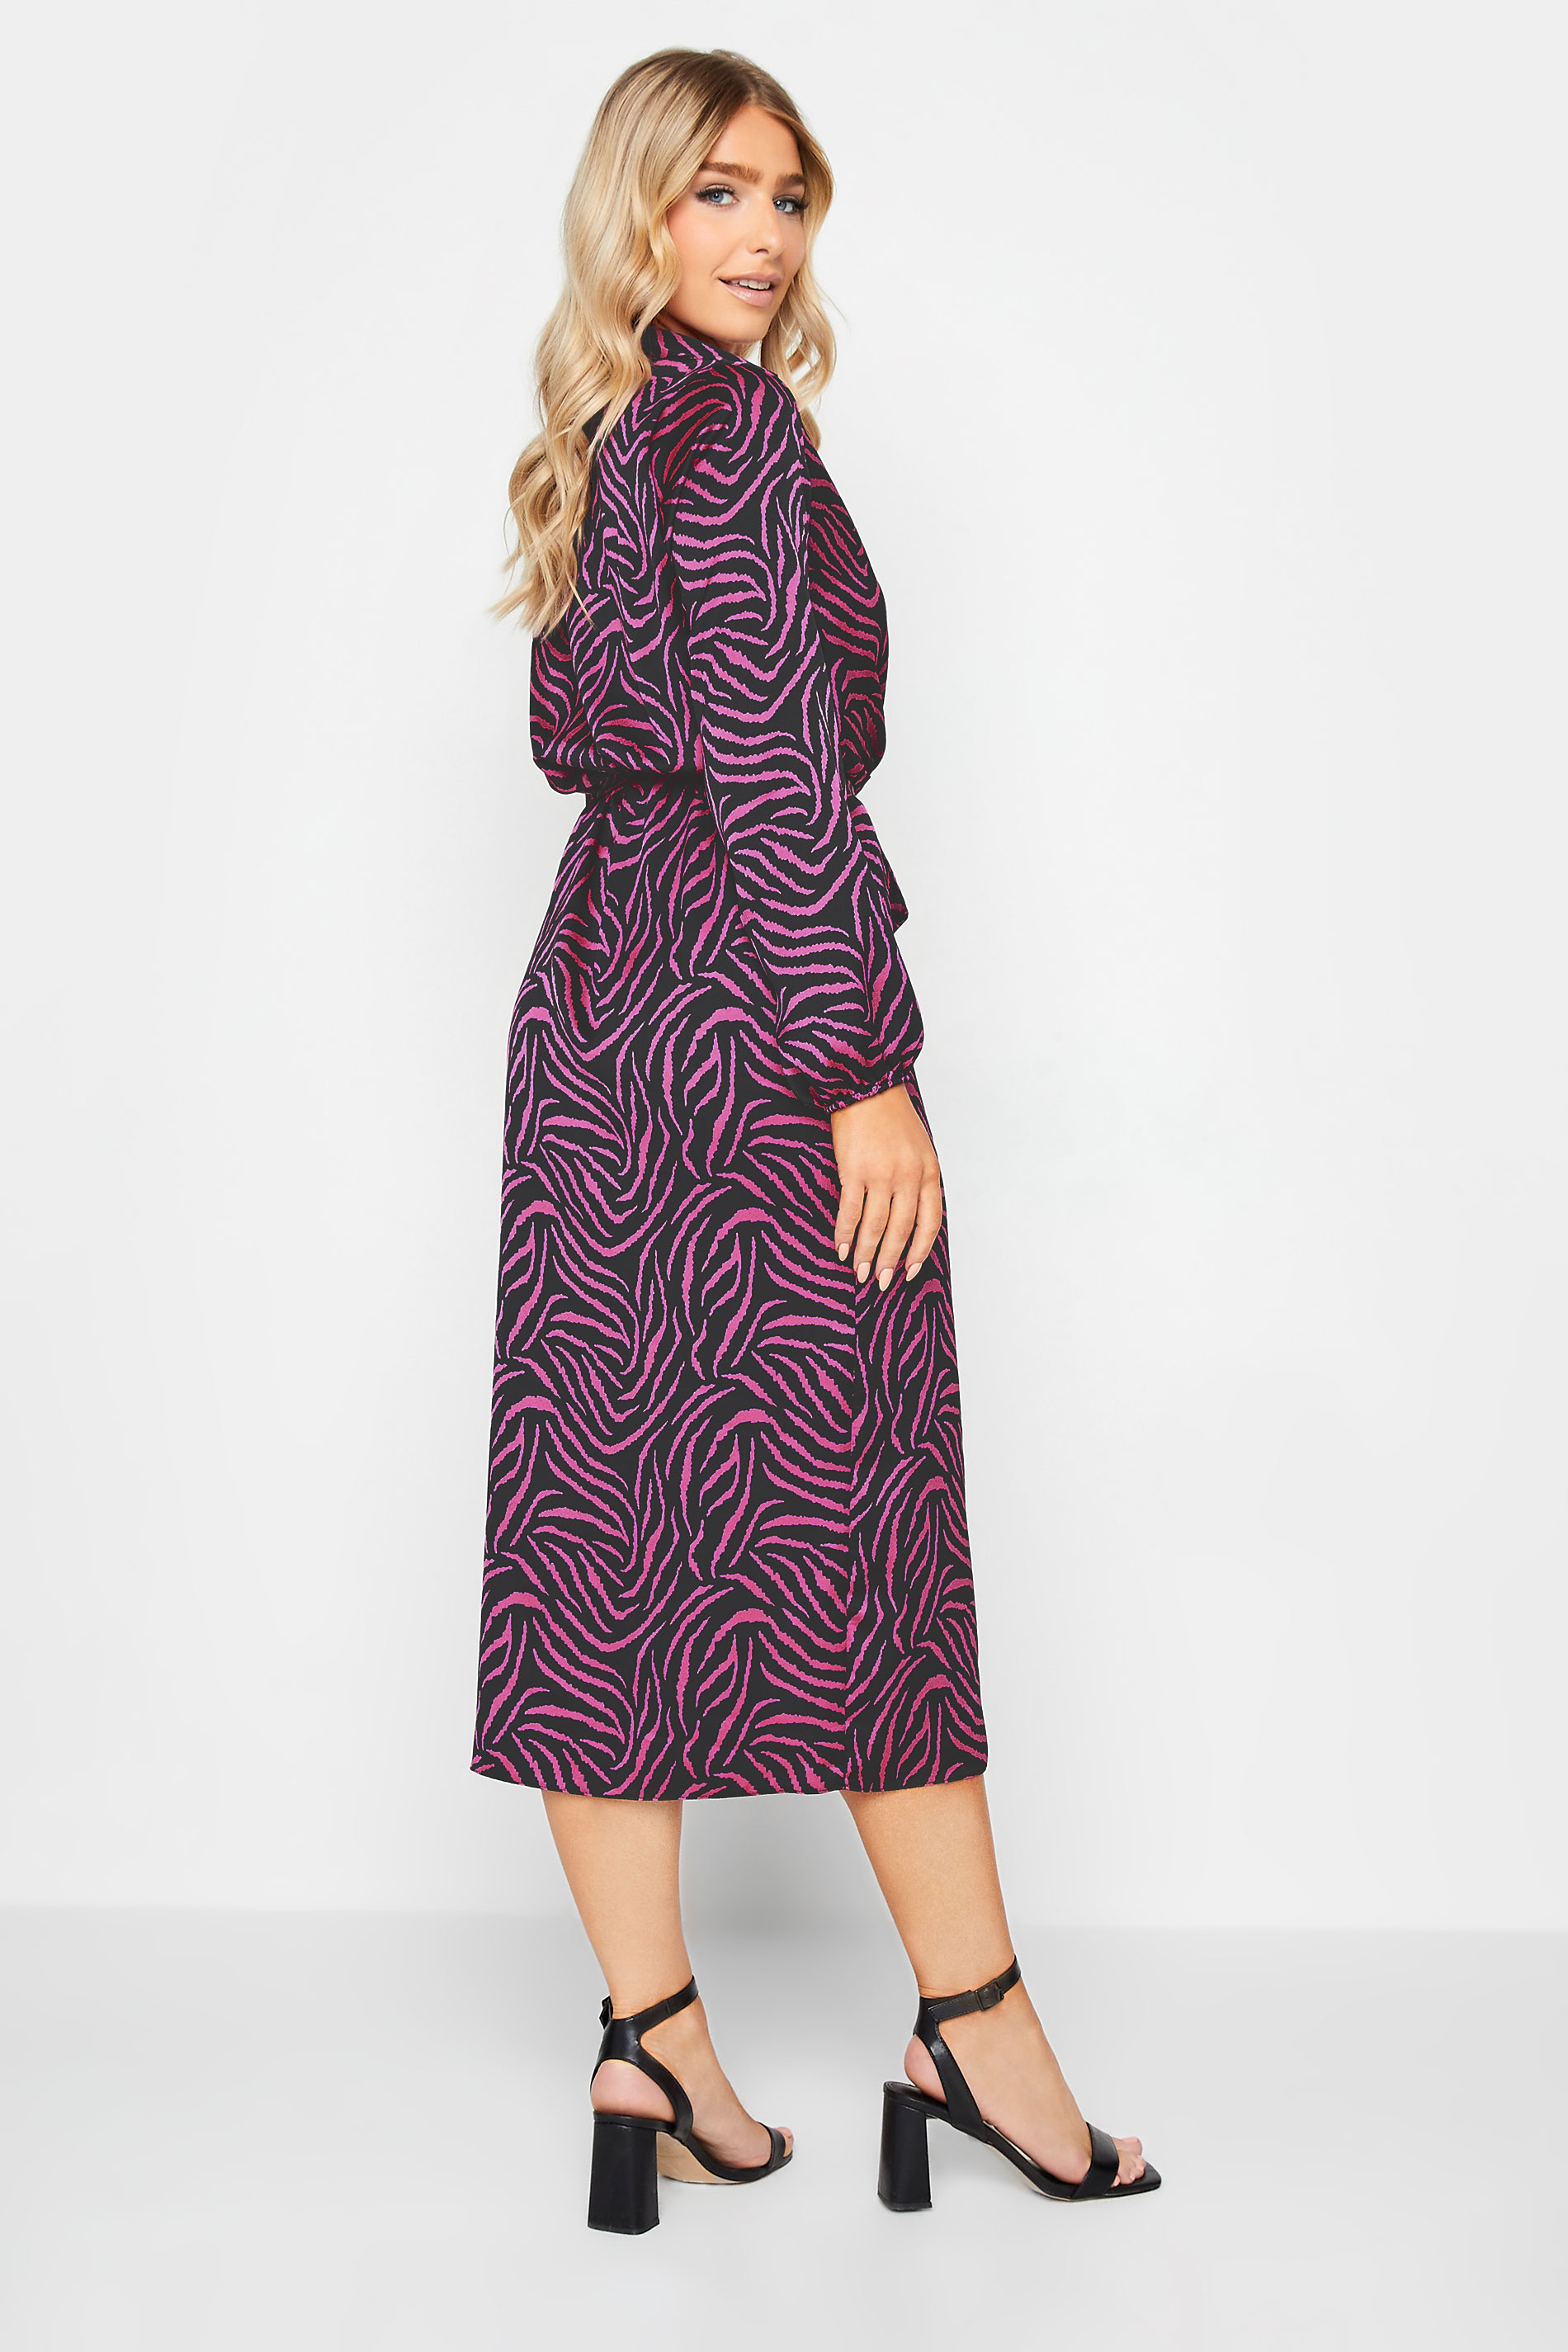 M&Co Black Zebra Print Midi Wrap Dress | M&Co 3